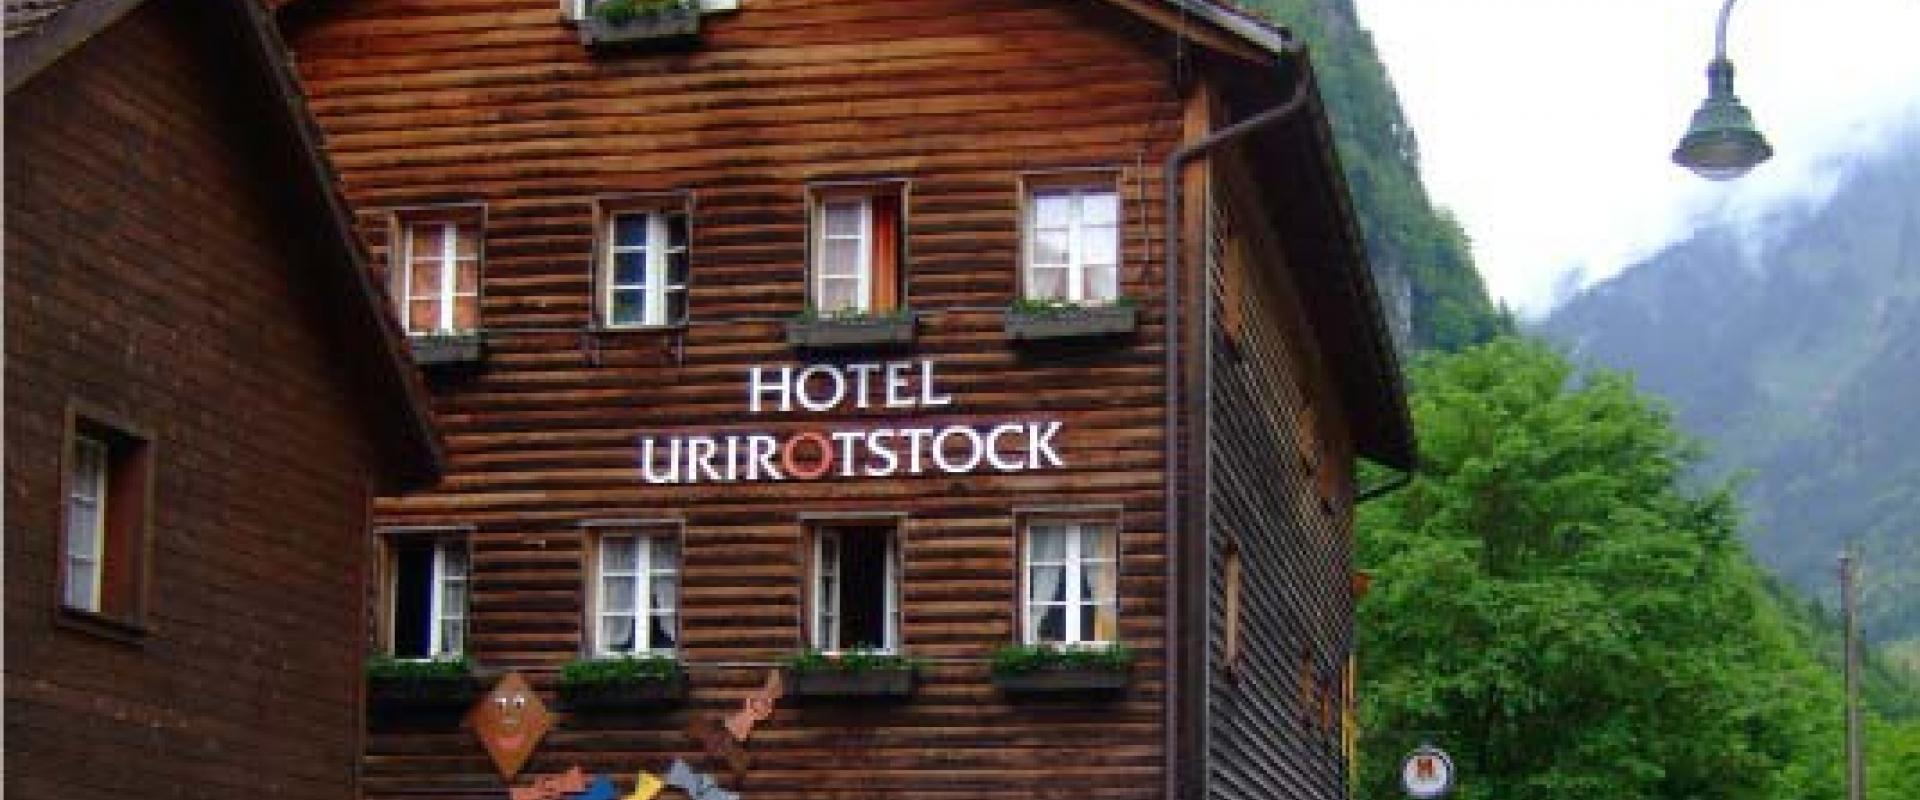 12270 Biker Hotel Urirotstock in der Zentralschweiz.jpg